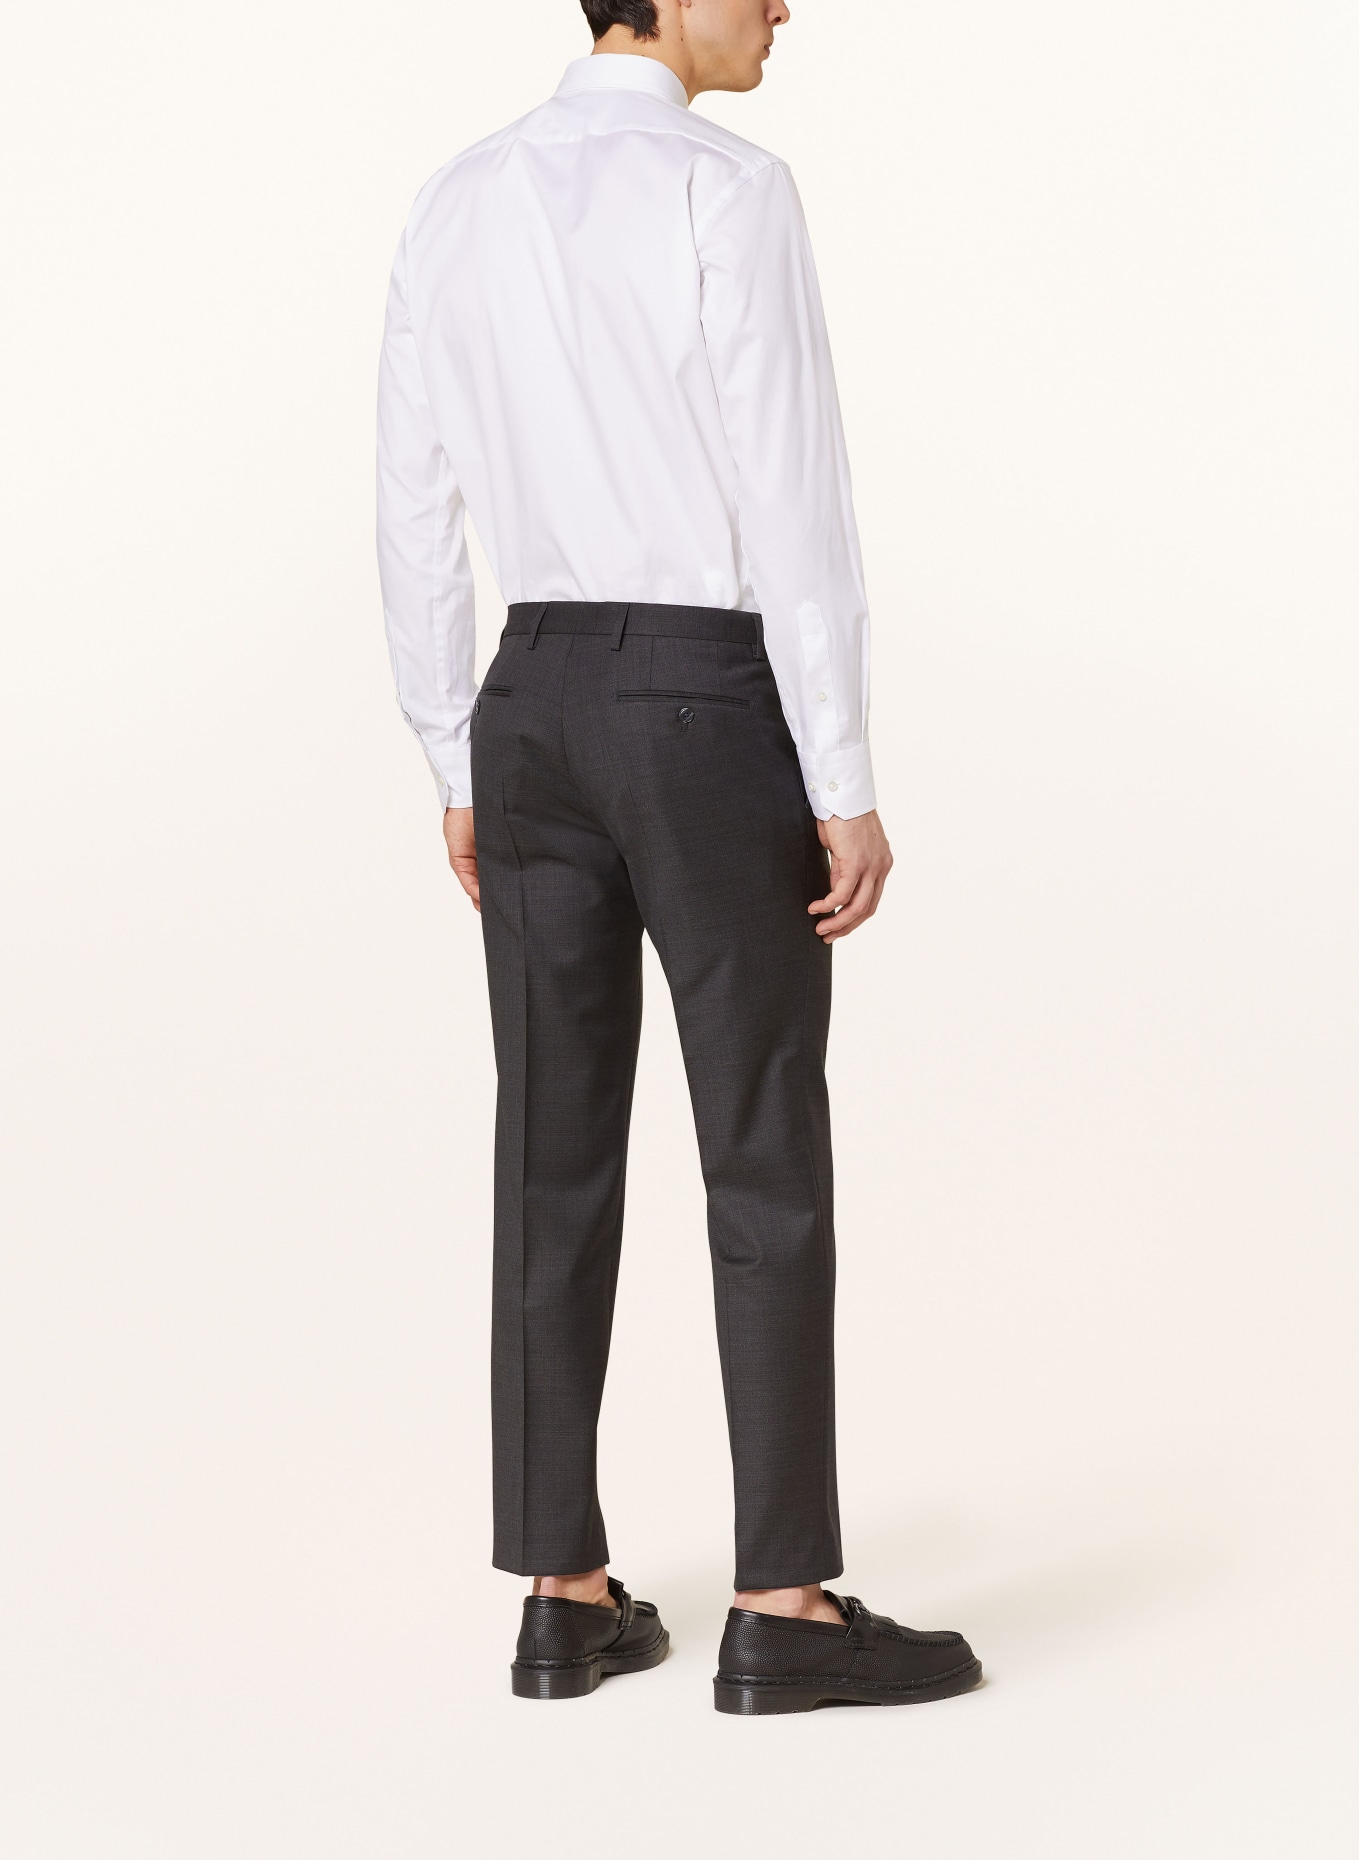 BALDESSARINI Suit trousers MASSA slim fit, Color: 9528 Black Beauty Melange (Image 4)